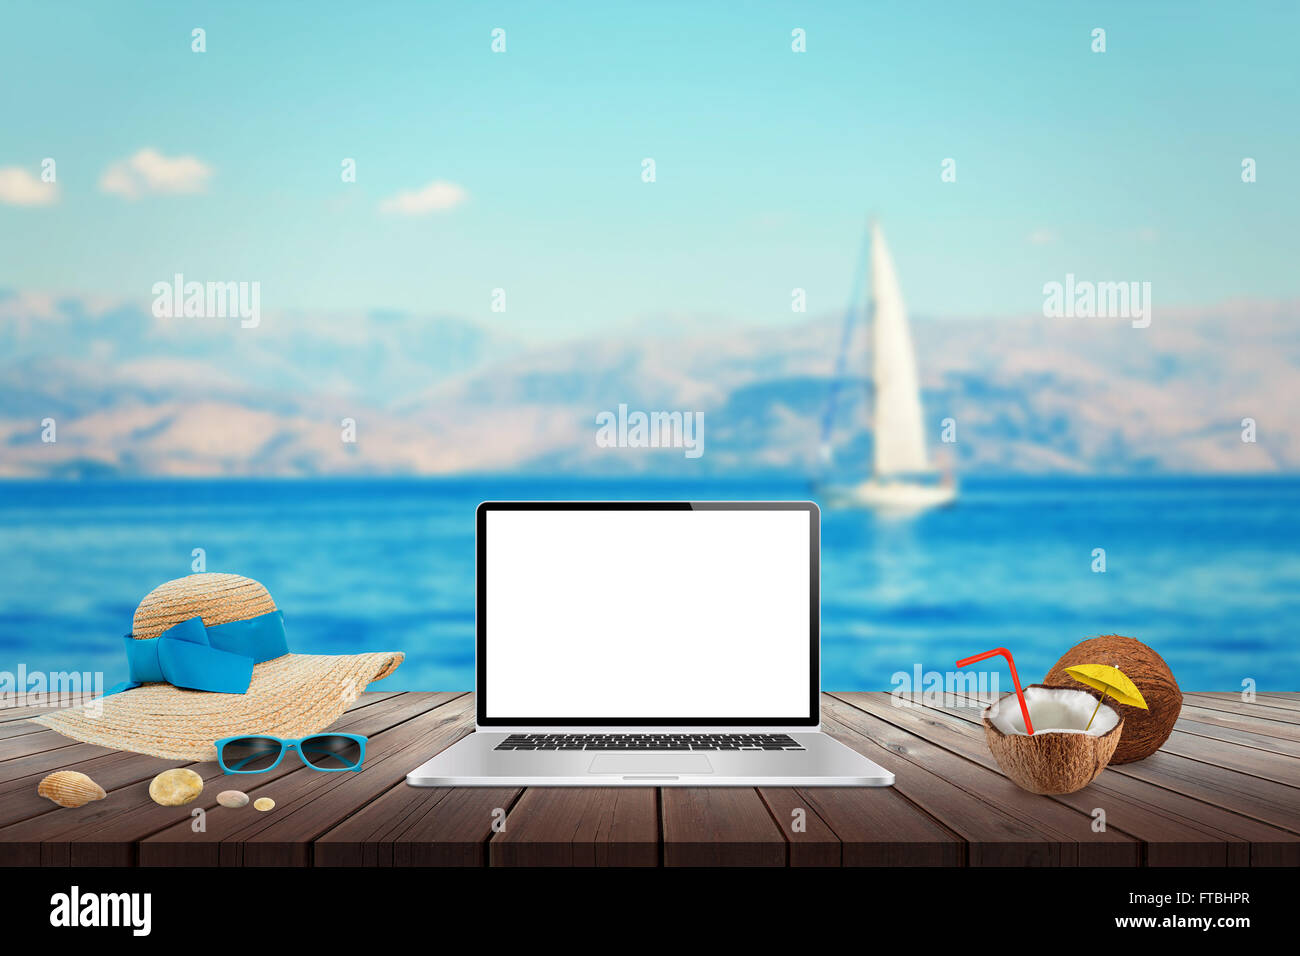 Visualizzazione isolata del computer portatile sul tavolo di legno per mockup. Noce di cocco, hat, conchiglie, pietre, gli occhiali da sole sul tavolo. Mare, yacht Foto Stock